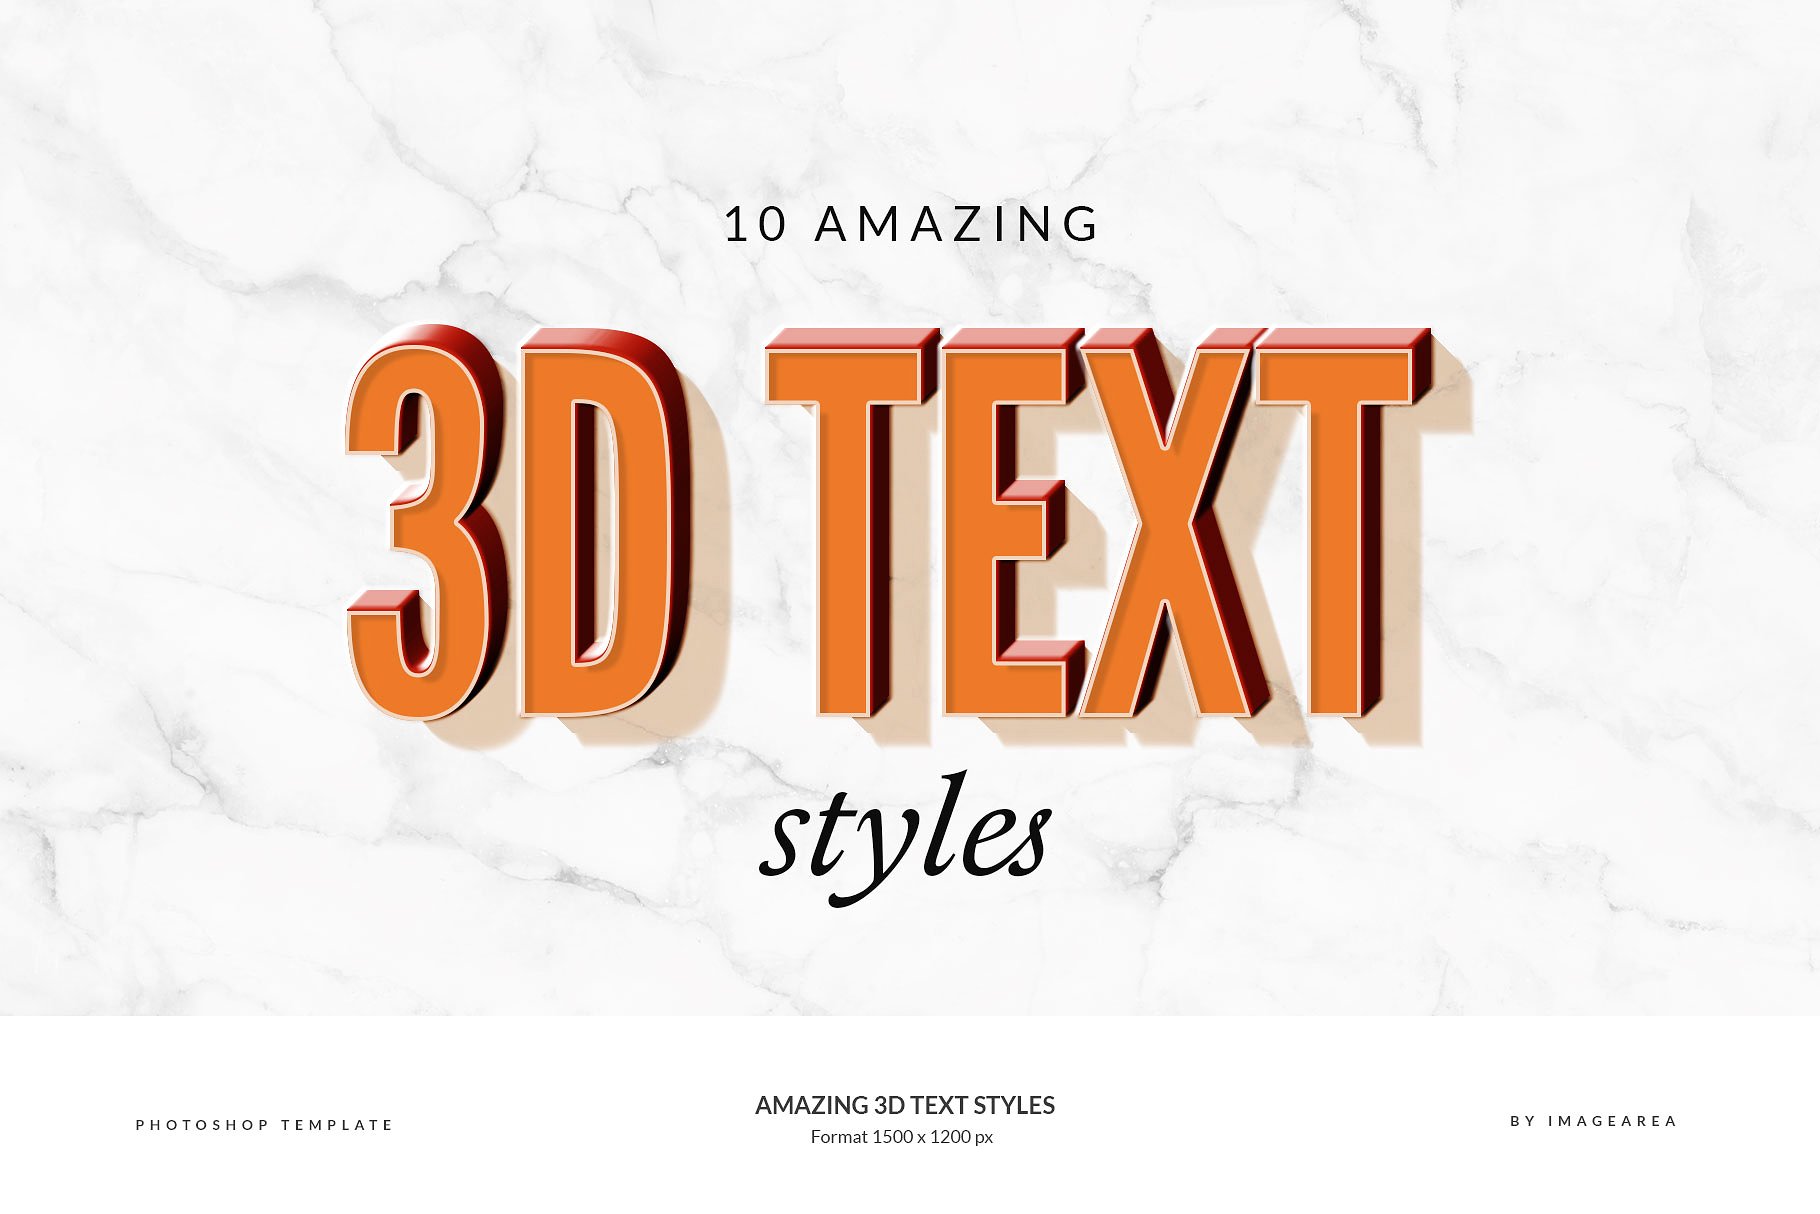 创意3D文本图层样式 Amazing 3D Text Styles插图